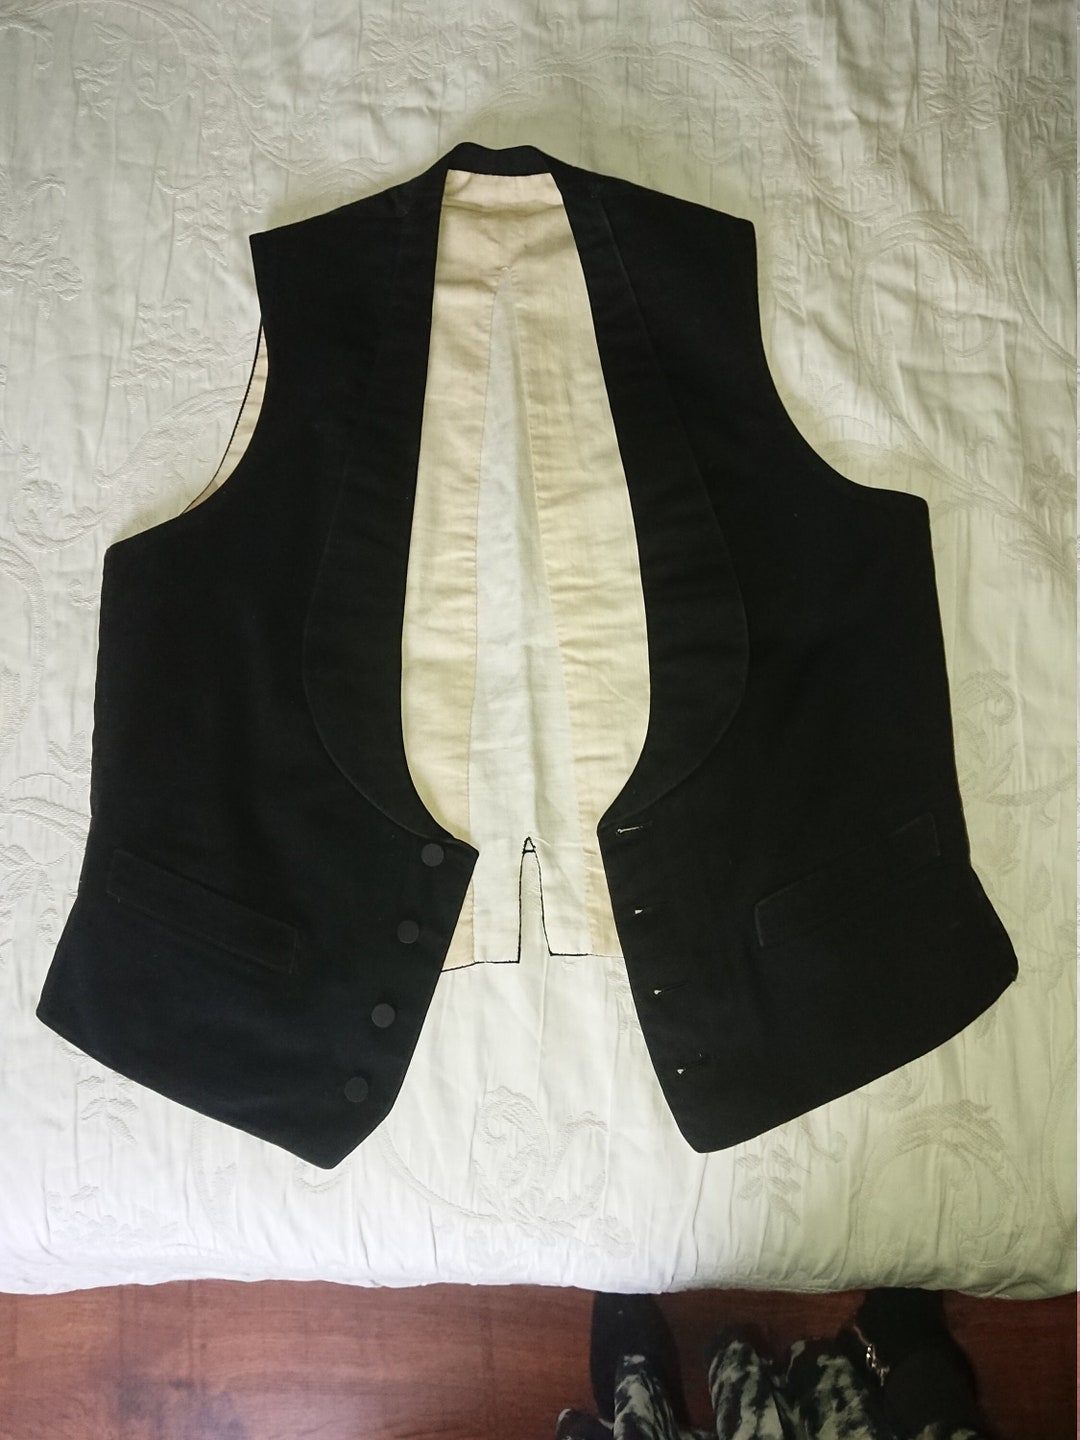 Black Cotton Vest Man 1900 France / Sewing Luxury Suit / Classic Suit Vest  in Cotton Color Black Lined Cotton Curved Back T38/40 